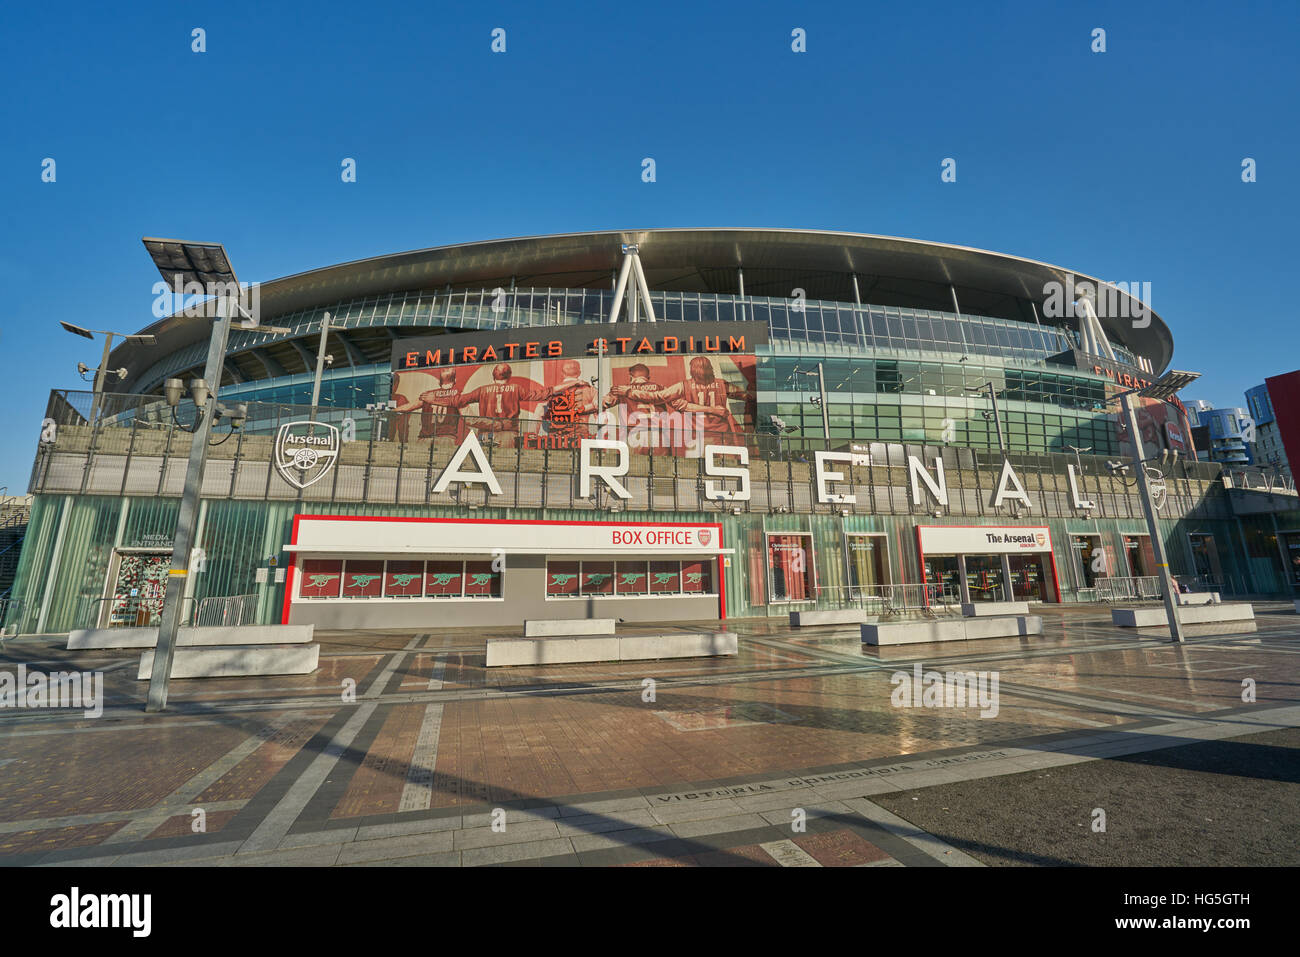 Estadio de fútbol del Arsenal. Emirates Stadium Foto de stock